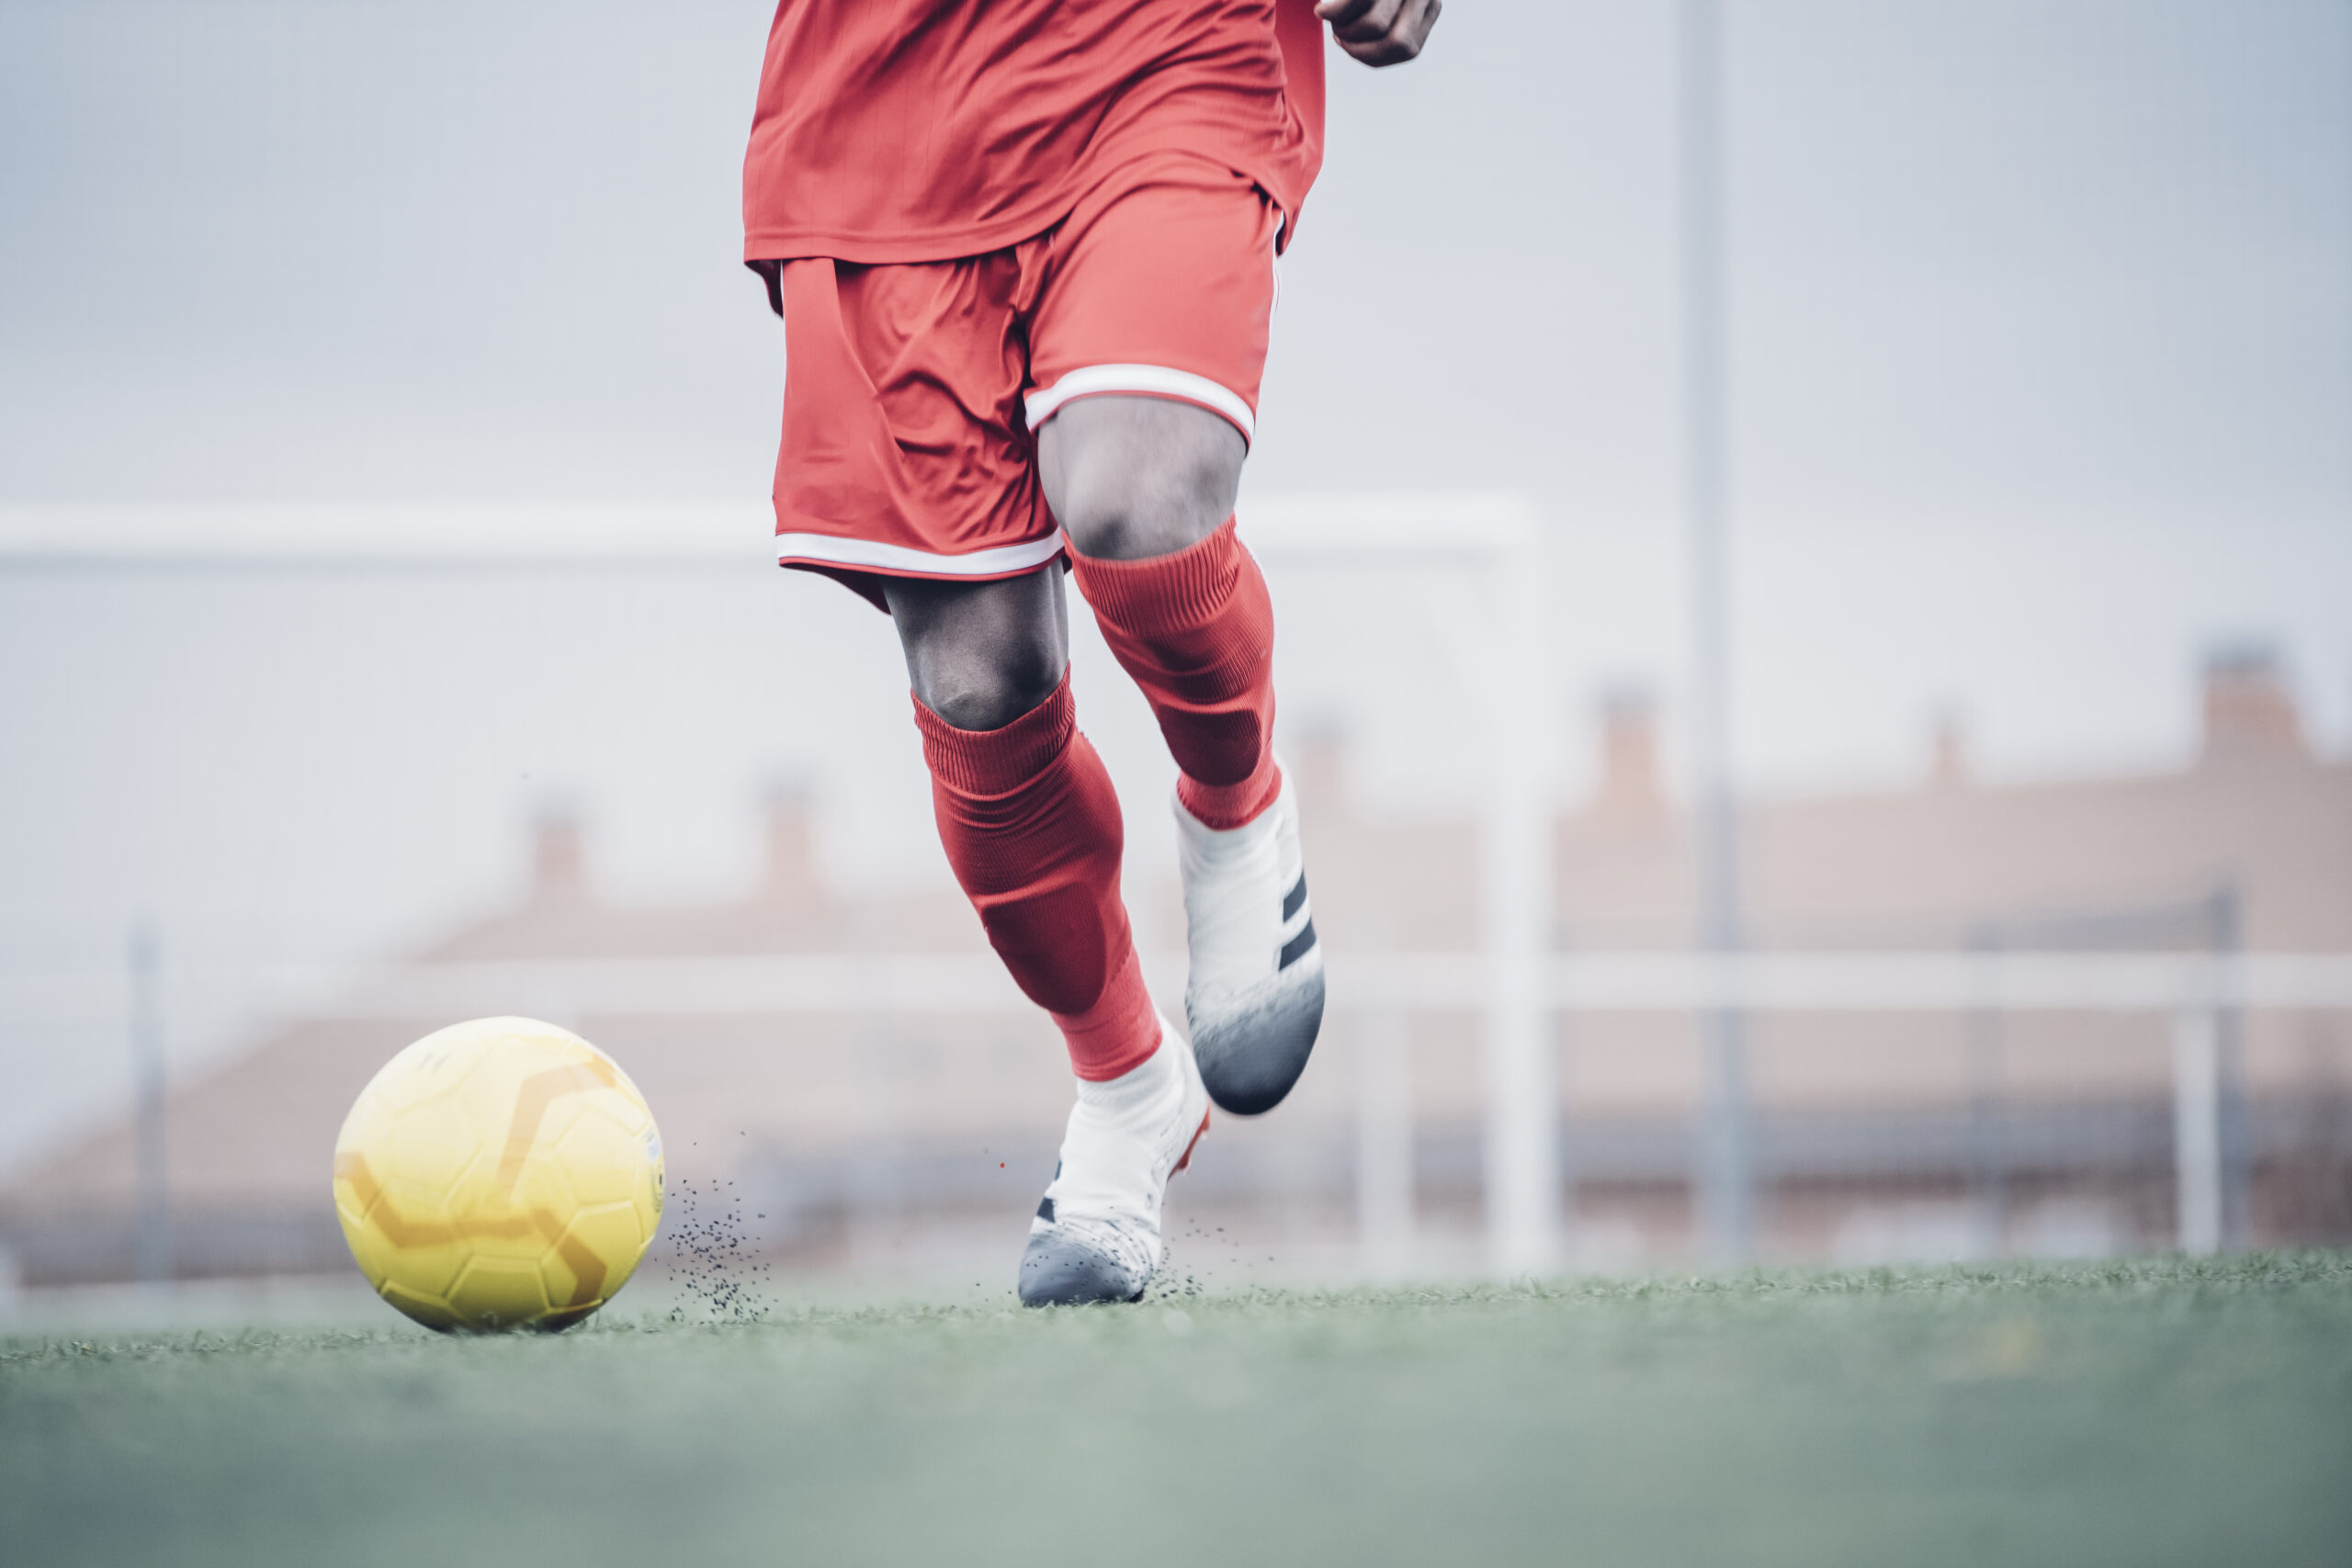 Entrainement de foot : comment optimiser la performance de ses joueurs ? 